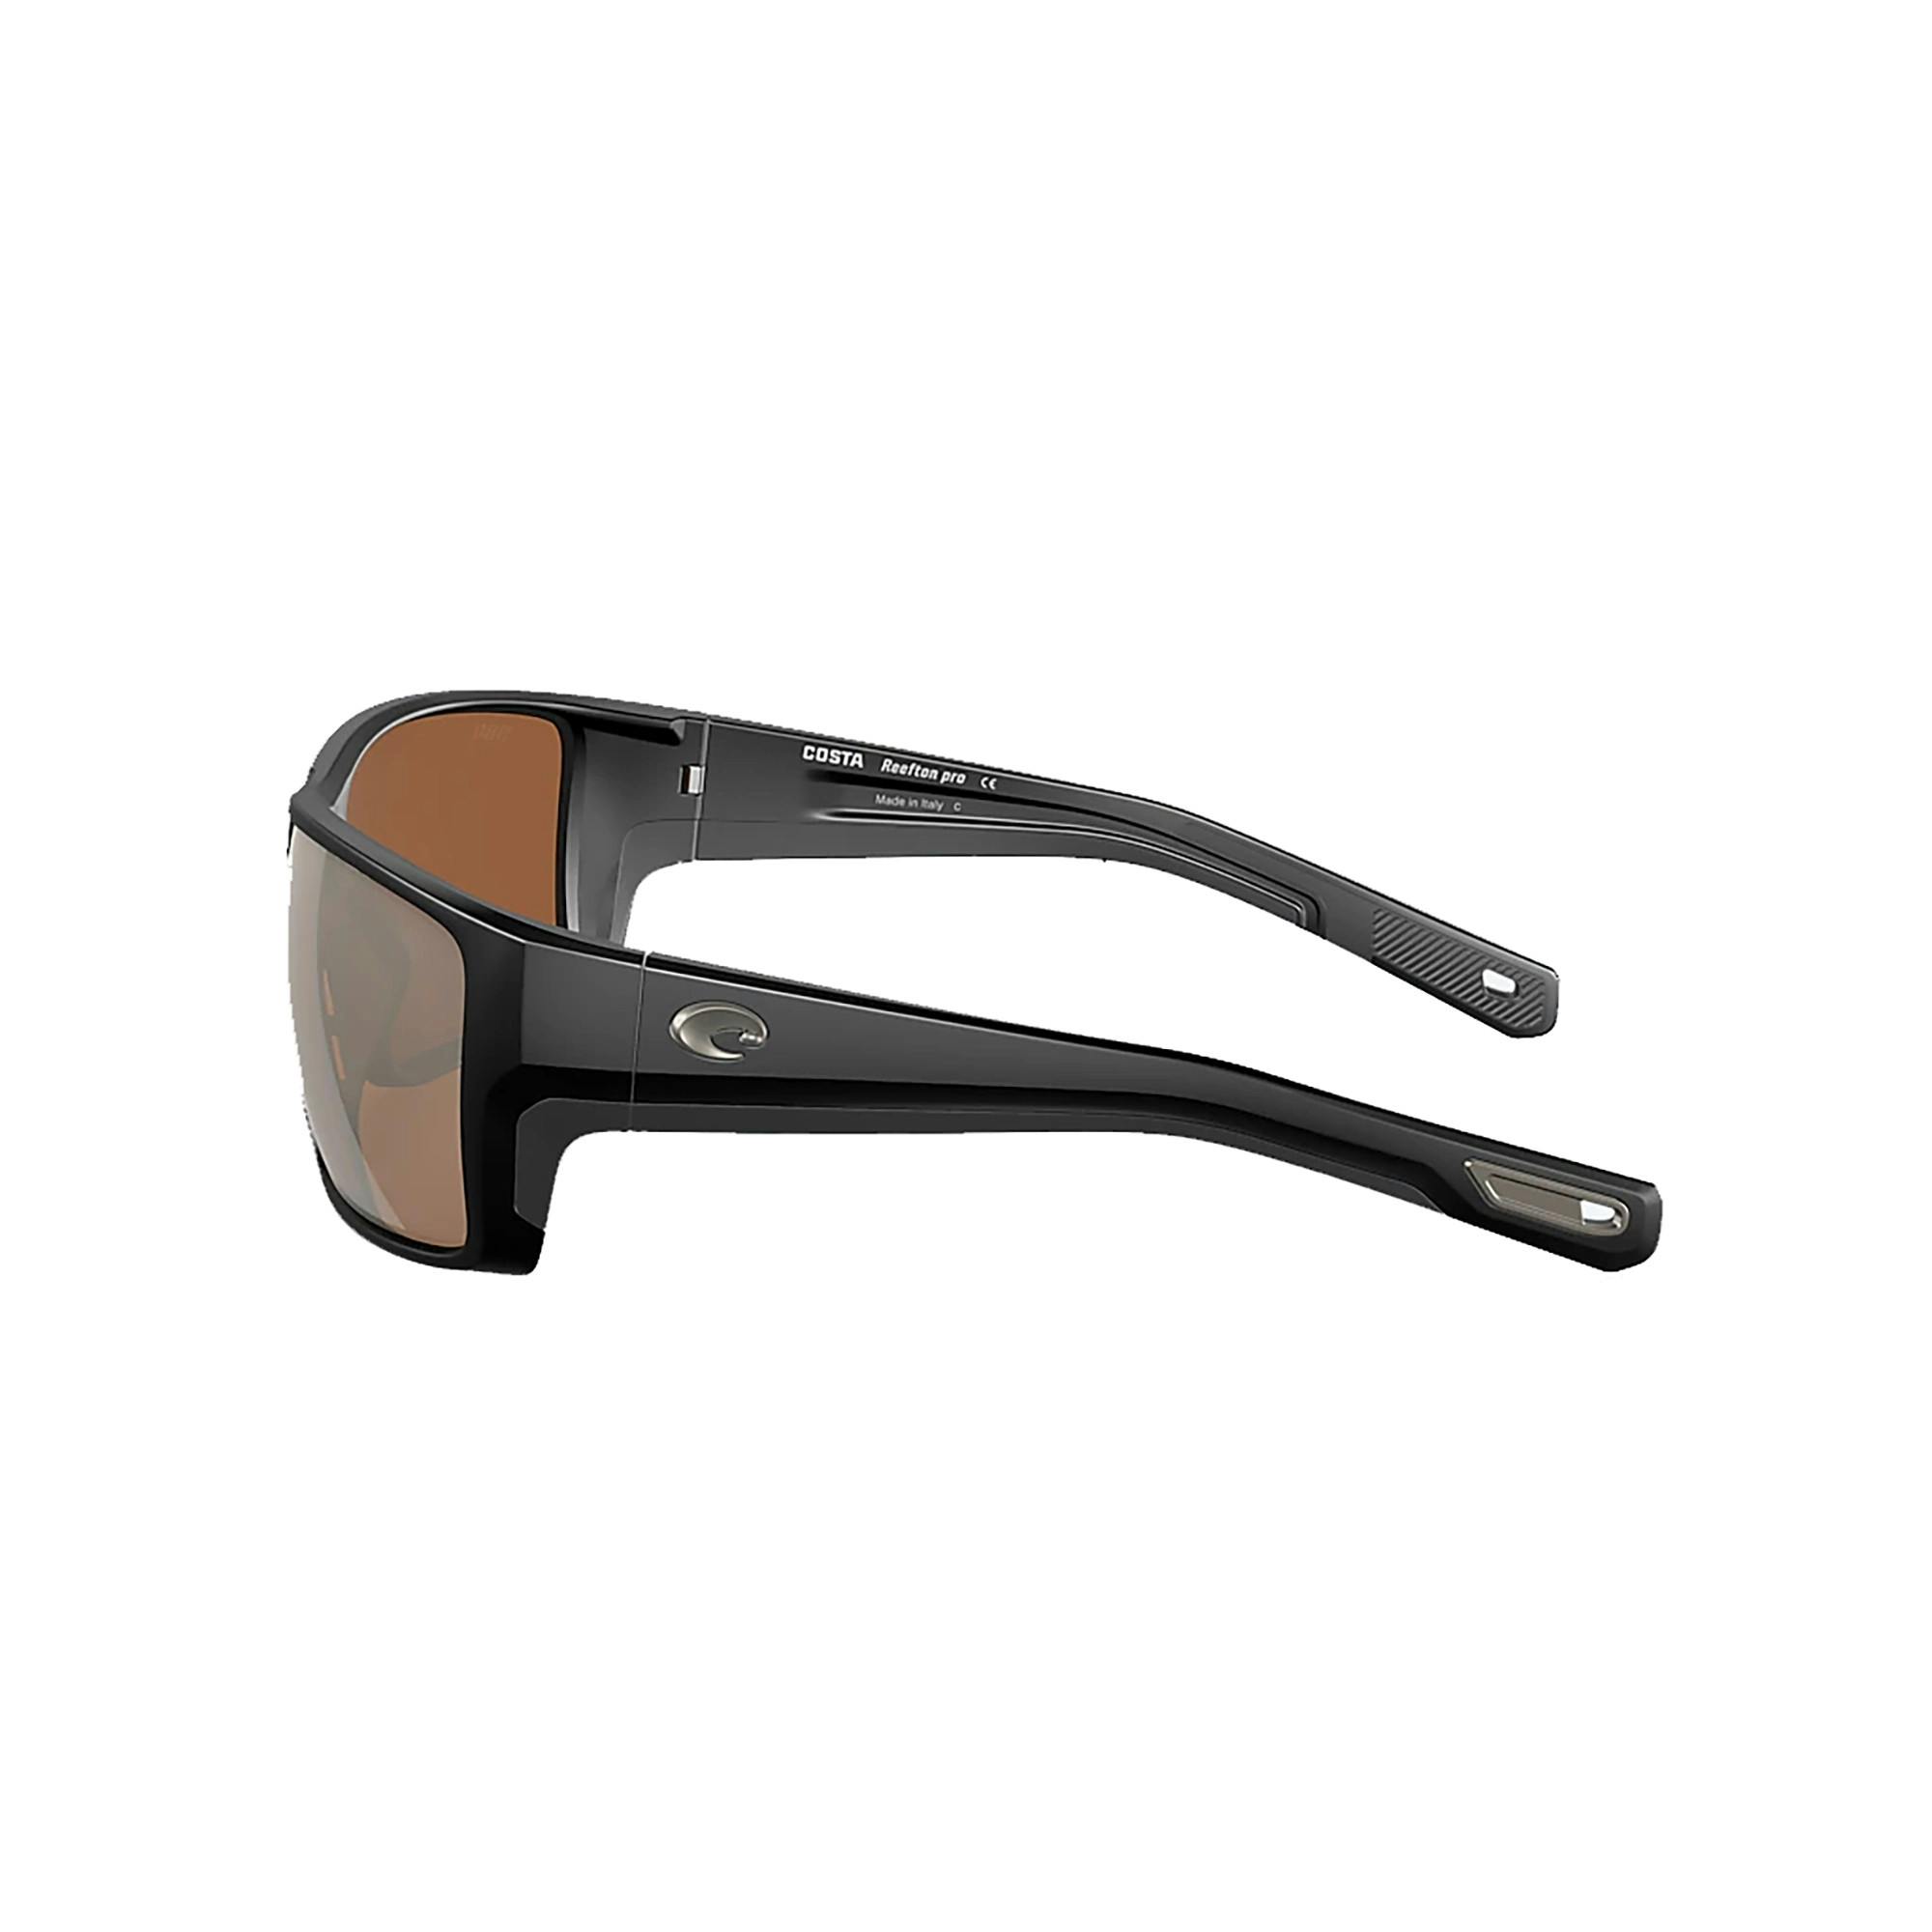 Costa Reefton Pro Sunglasses Side - Copper